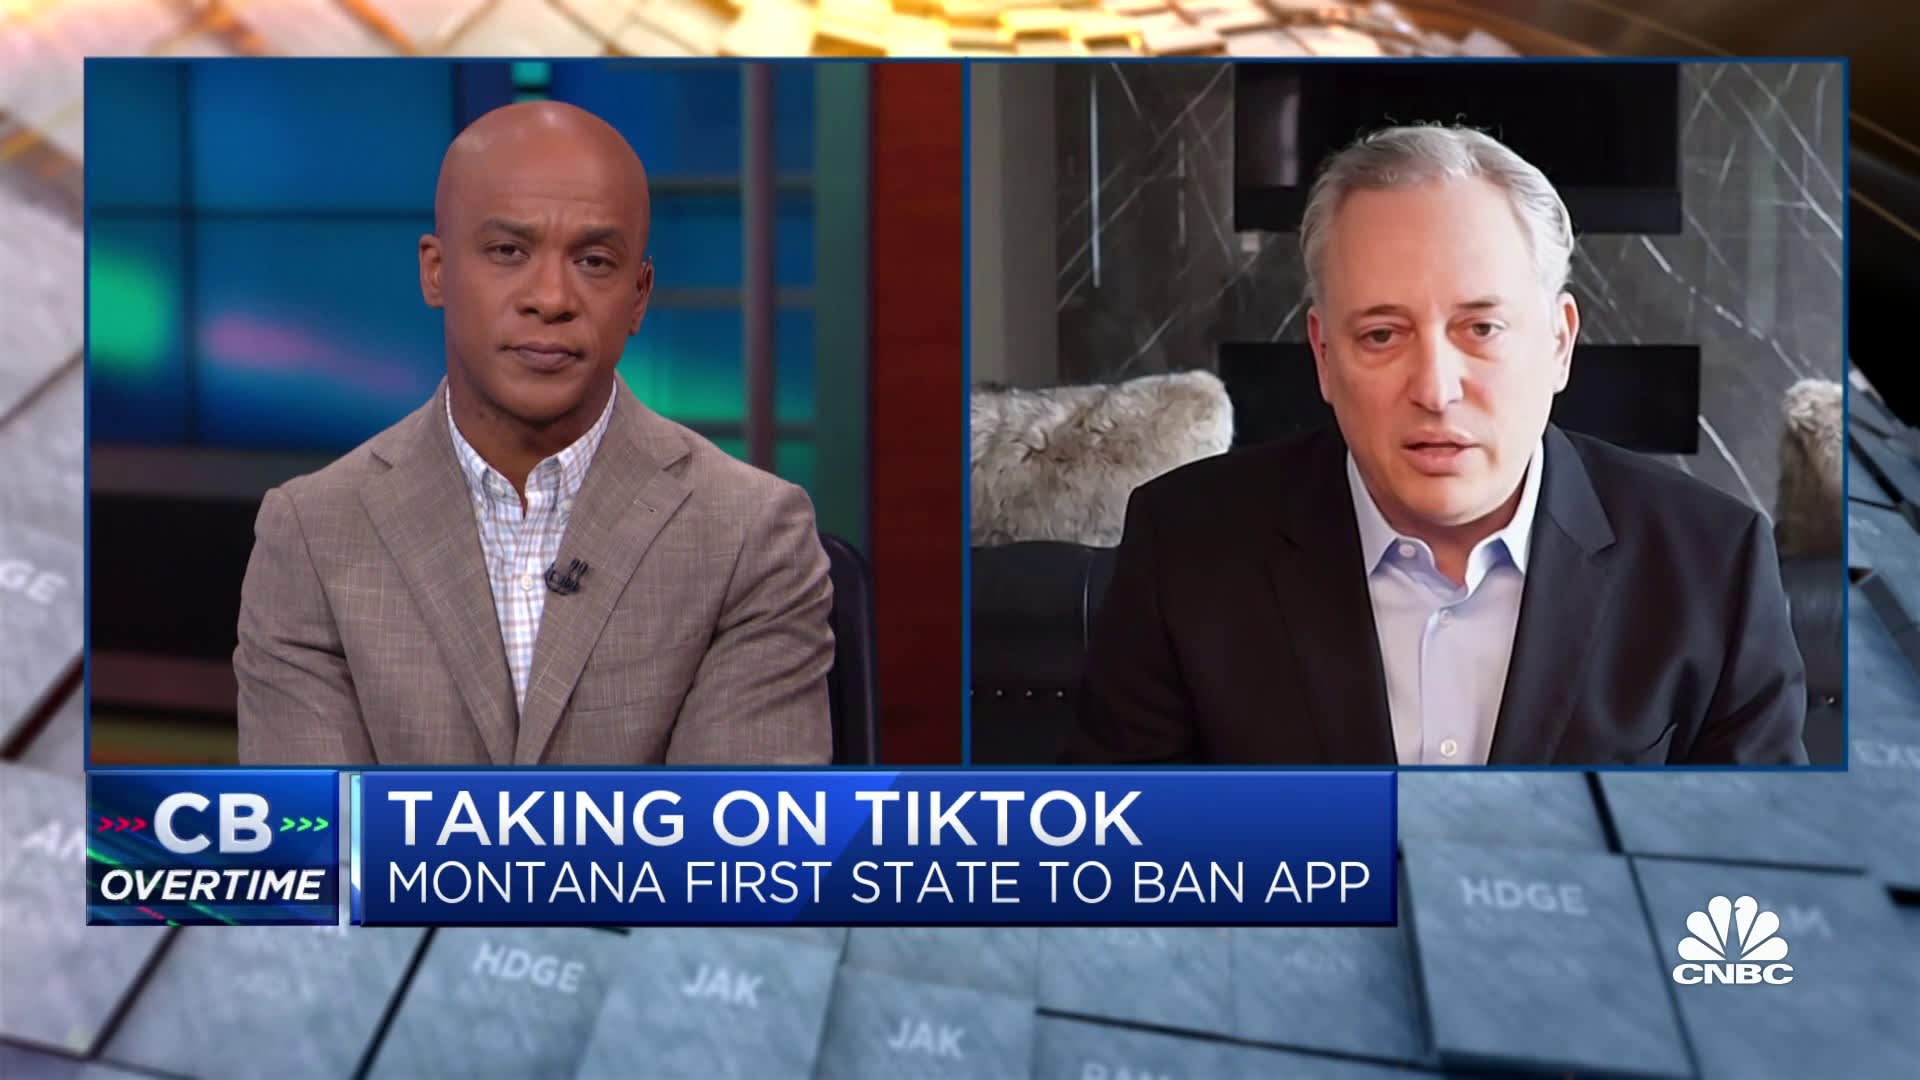 Banning TikTok at a state level 'doesn't make sense', says Craft Ventures' David Sacks